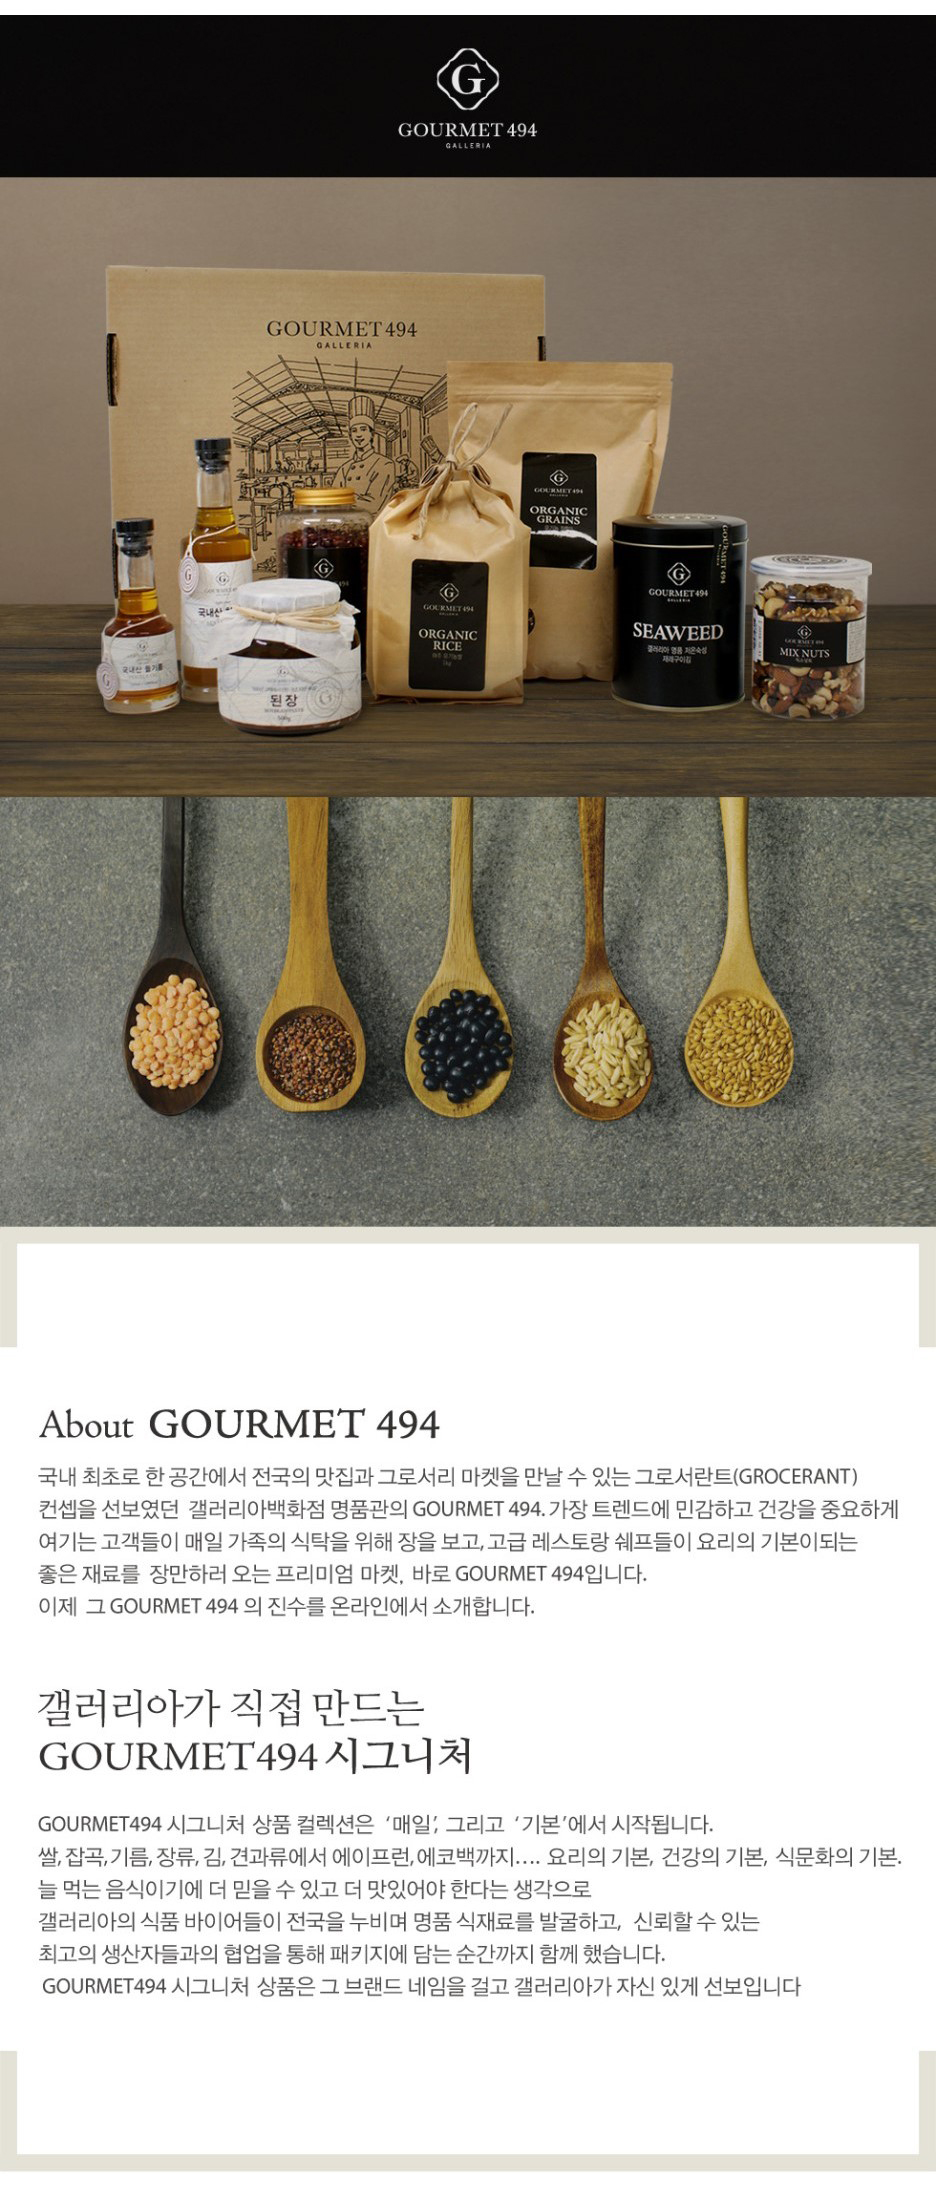 韓國食品-[갤러리아] 고메이494 게살 코코넛 카레소스 200g